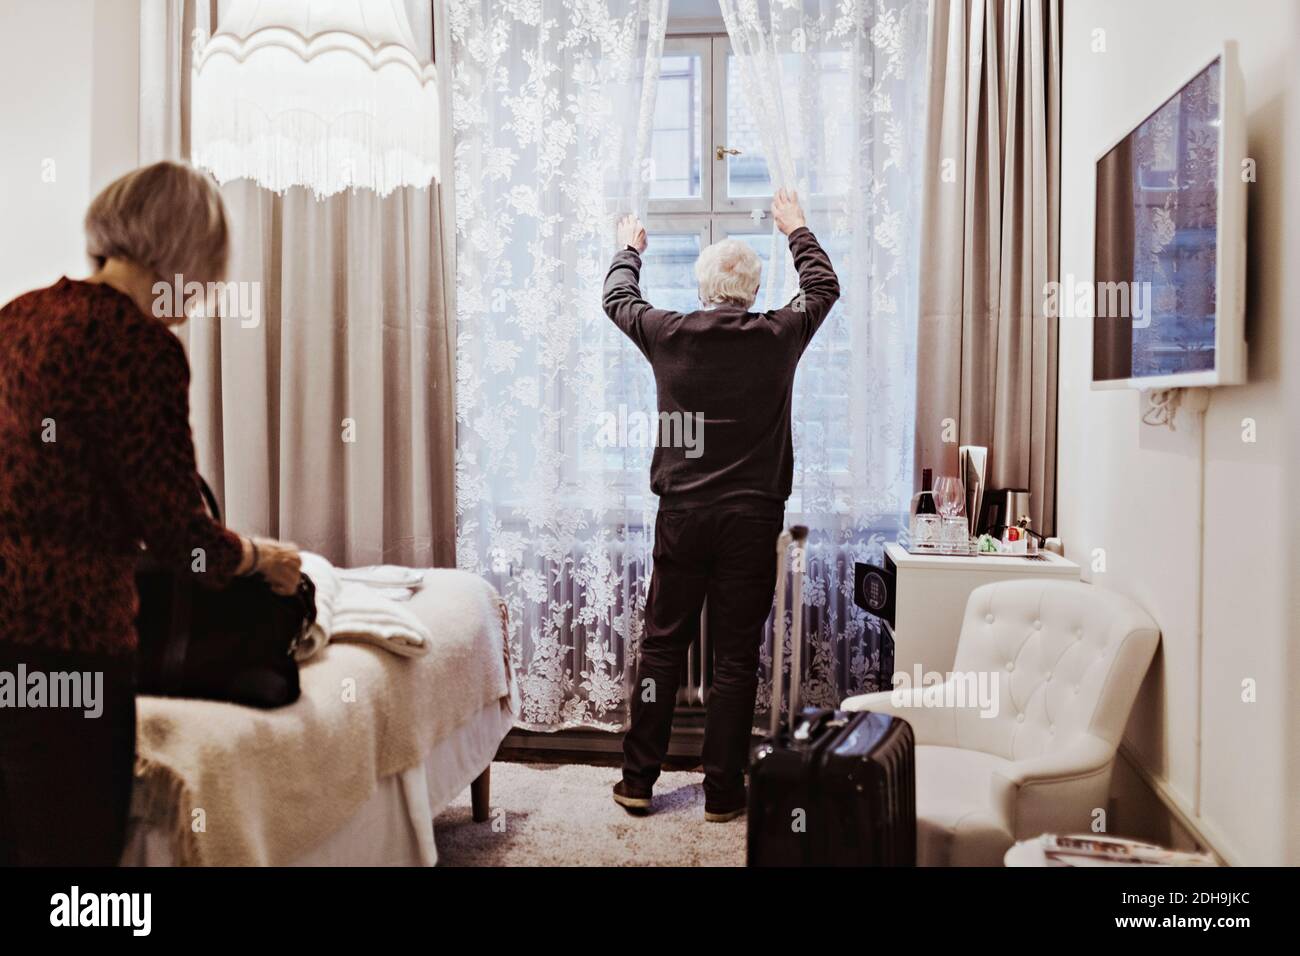 Älterer Mann, der die Vorhänge öffnete, während eine Frau die Tasche im Hotel hielt Zimmer Stockfoto